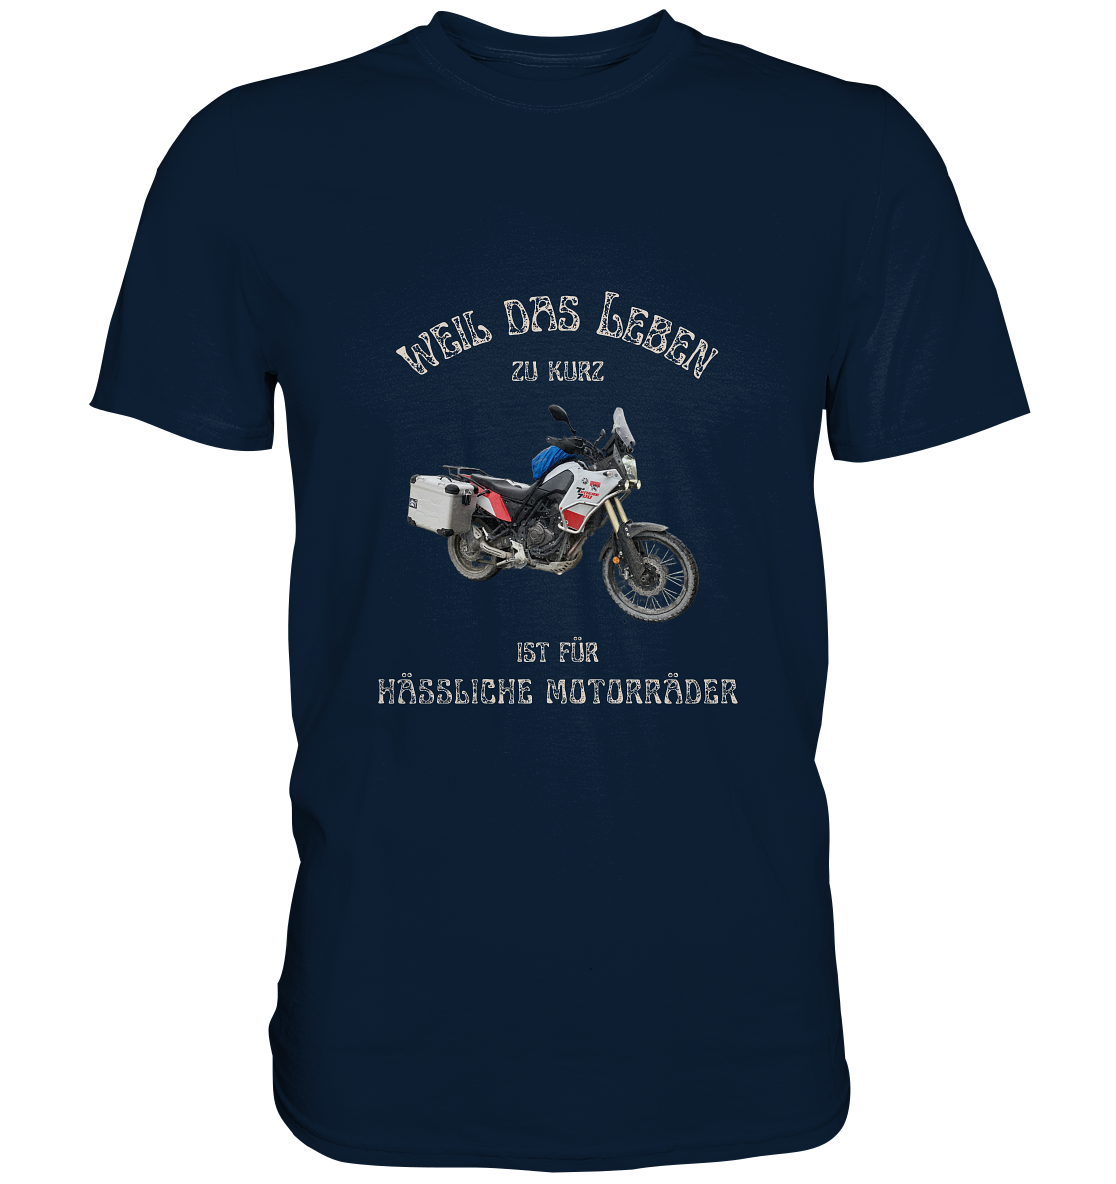 "Weil das Leben zu kurz ist für hässliche Motorräder" _ für Tim Hönnens | individualisiertes Shirt mit Foto und Motorrad-Spruch in hellem Design